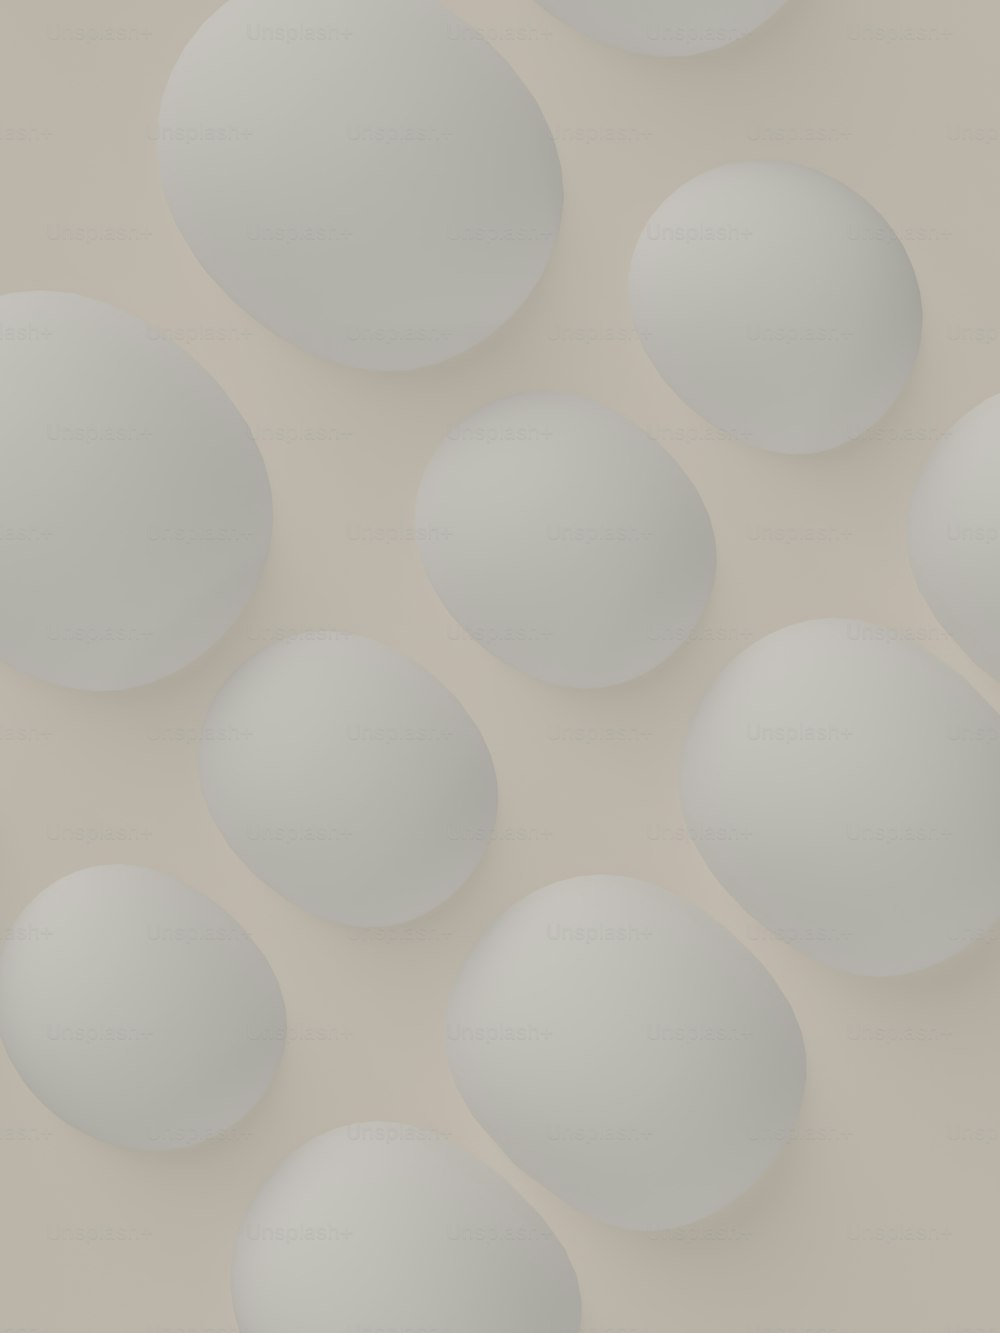 테이블 위에 놓인 흰 달걀 한 다발